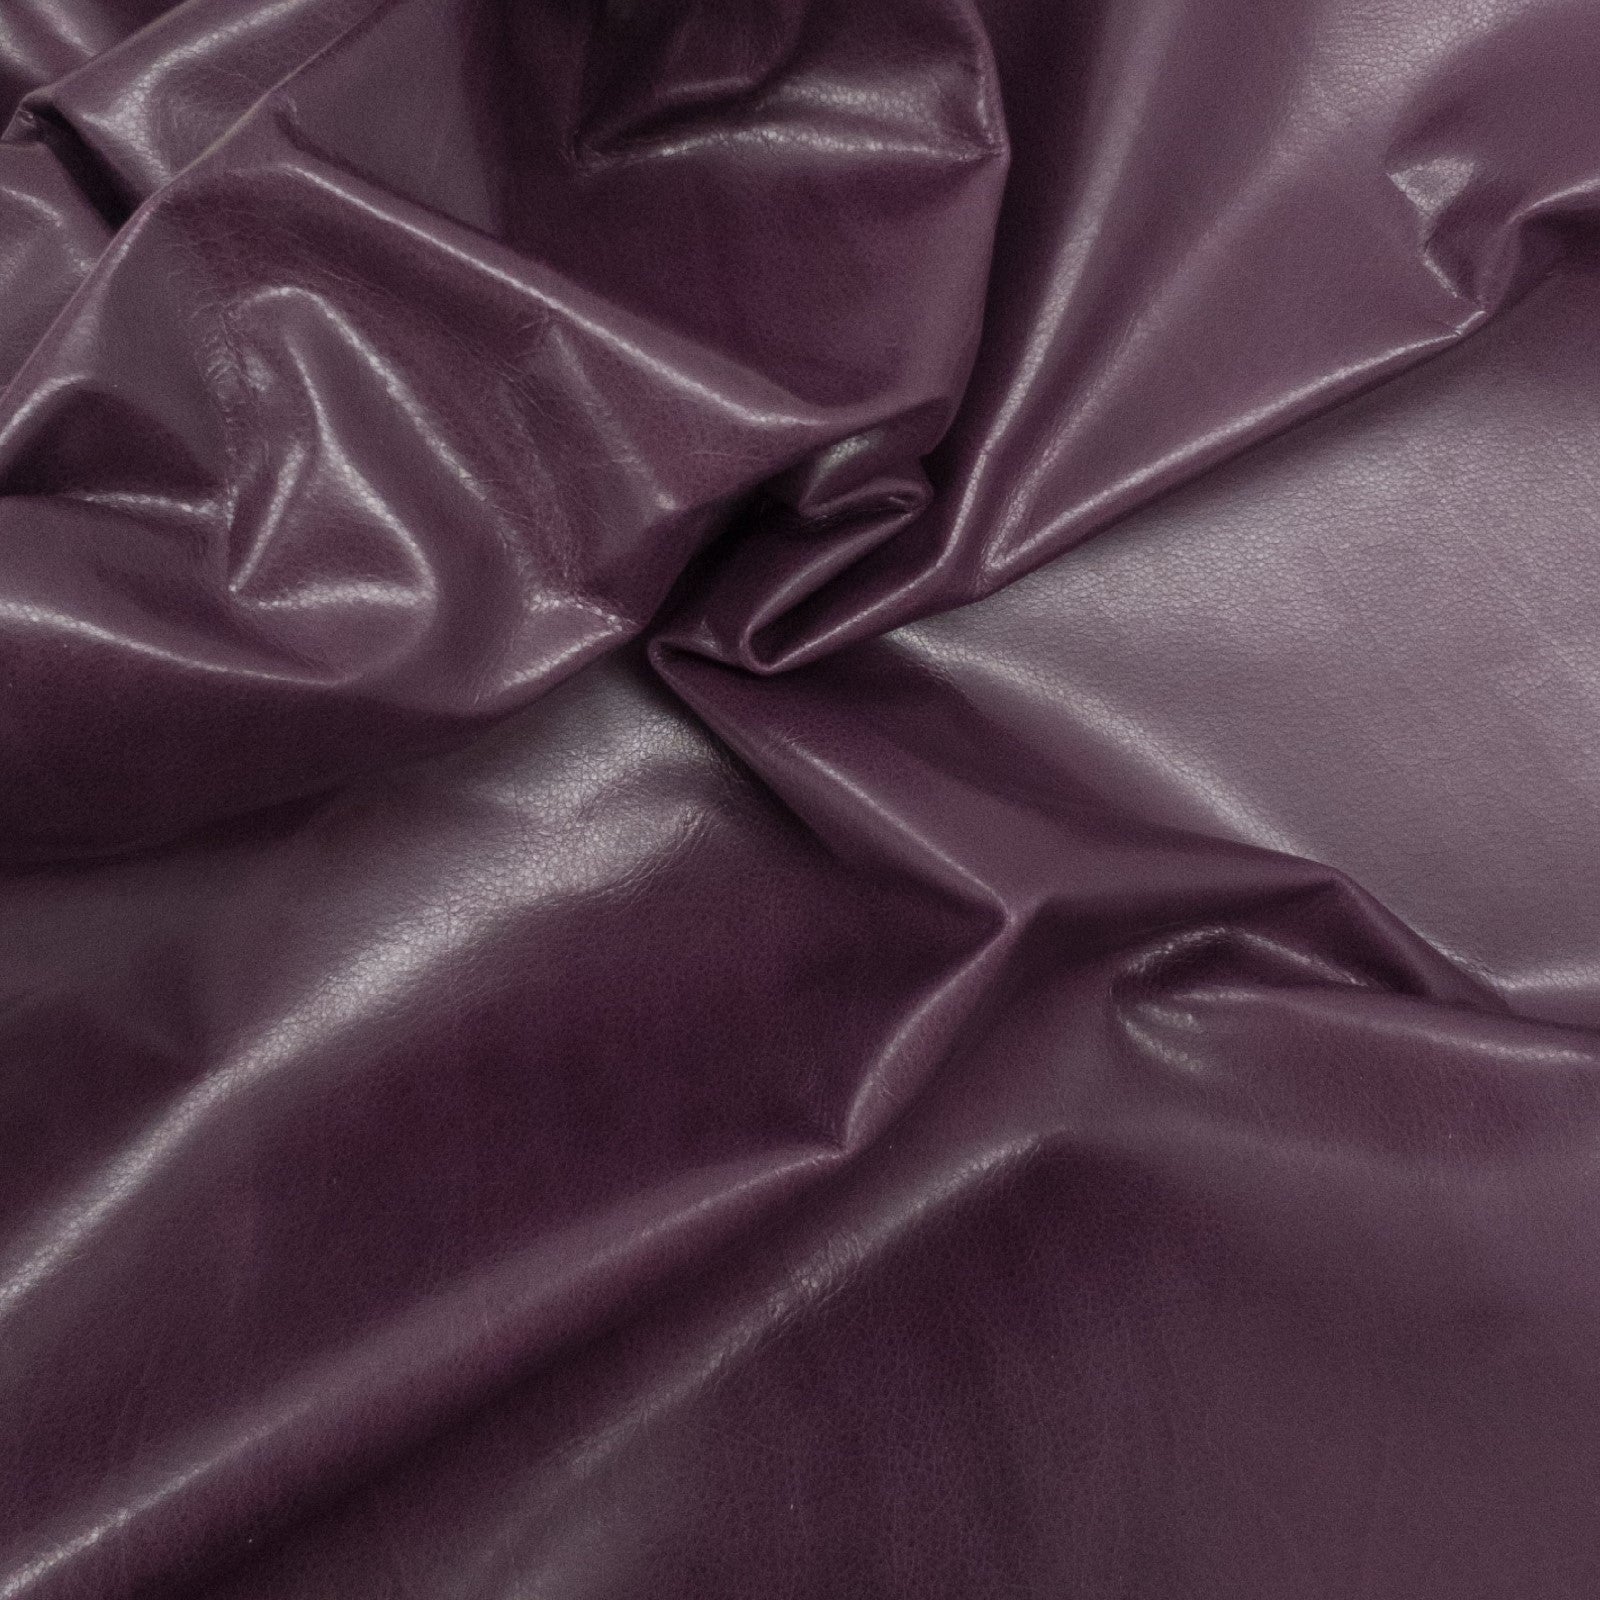 Purples, 3-10 Sq Ft, 1-3 oz, Lamb Hides, Deep Plum / 5-6 | The Leather Guy